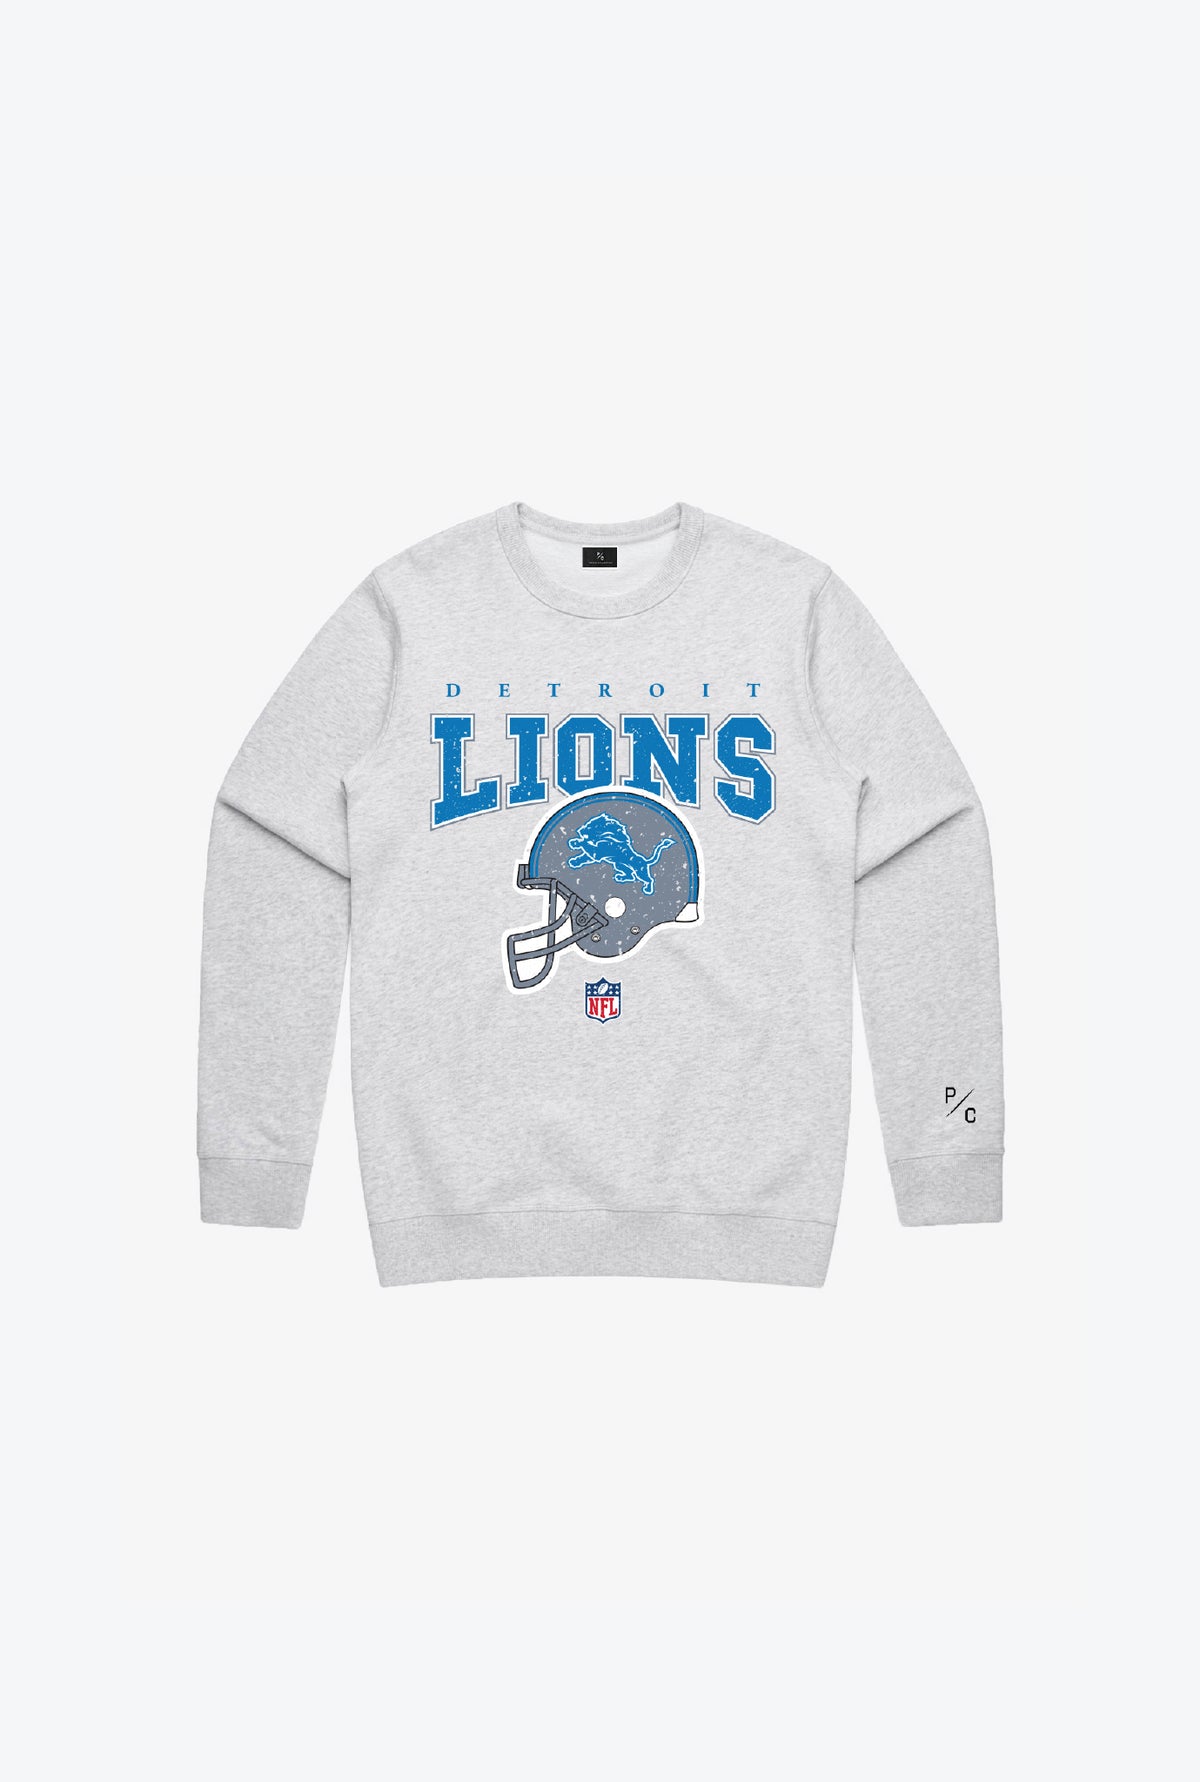 Detroit Lions Vintage Kids Crewneck - Grey